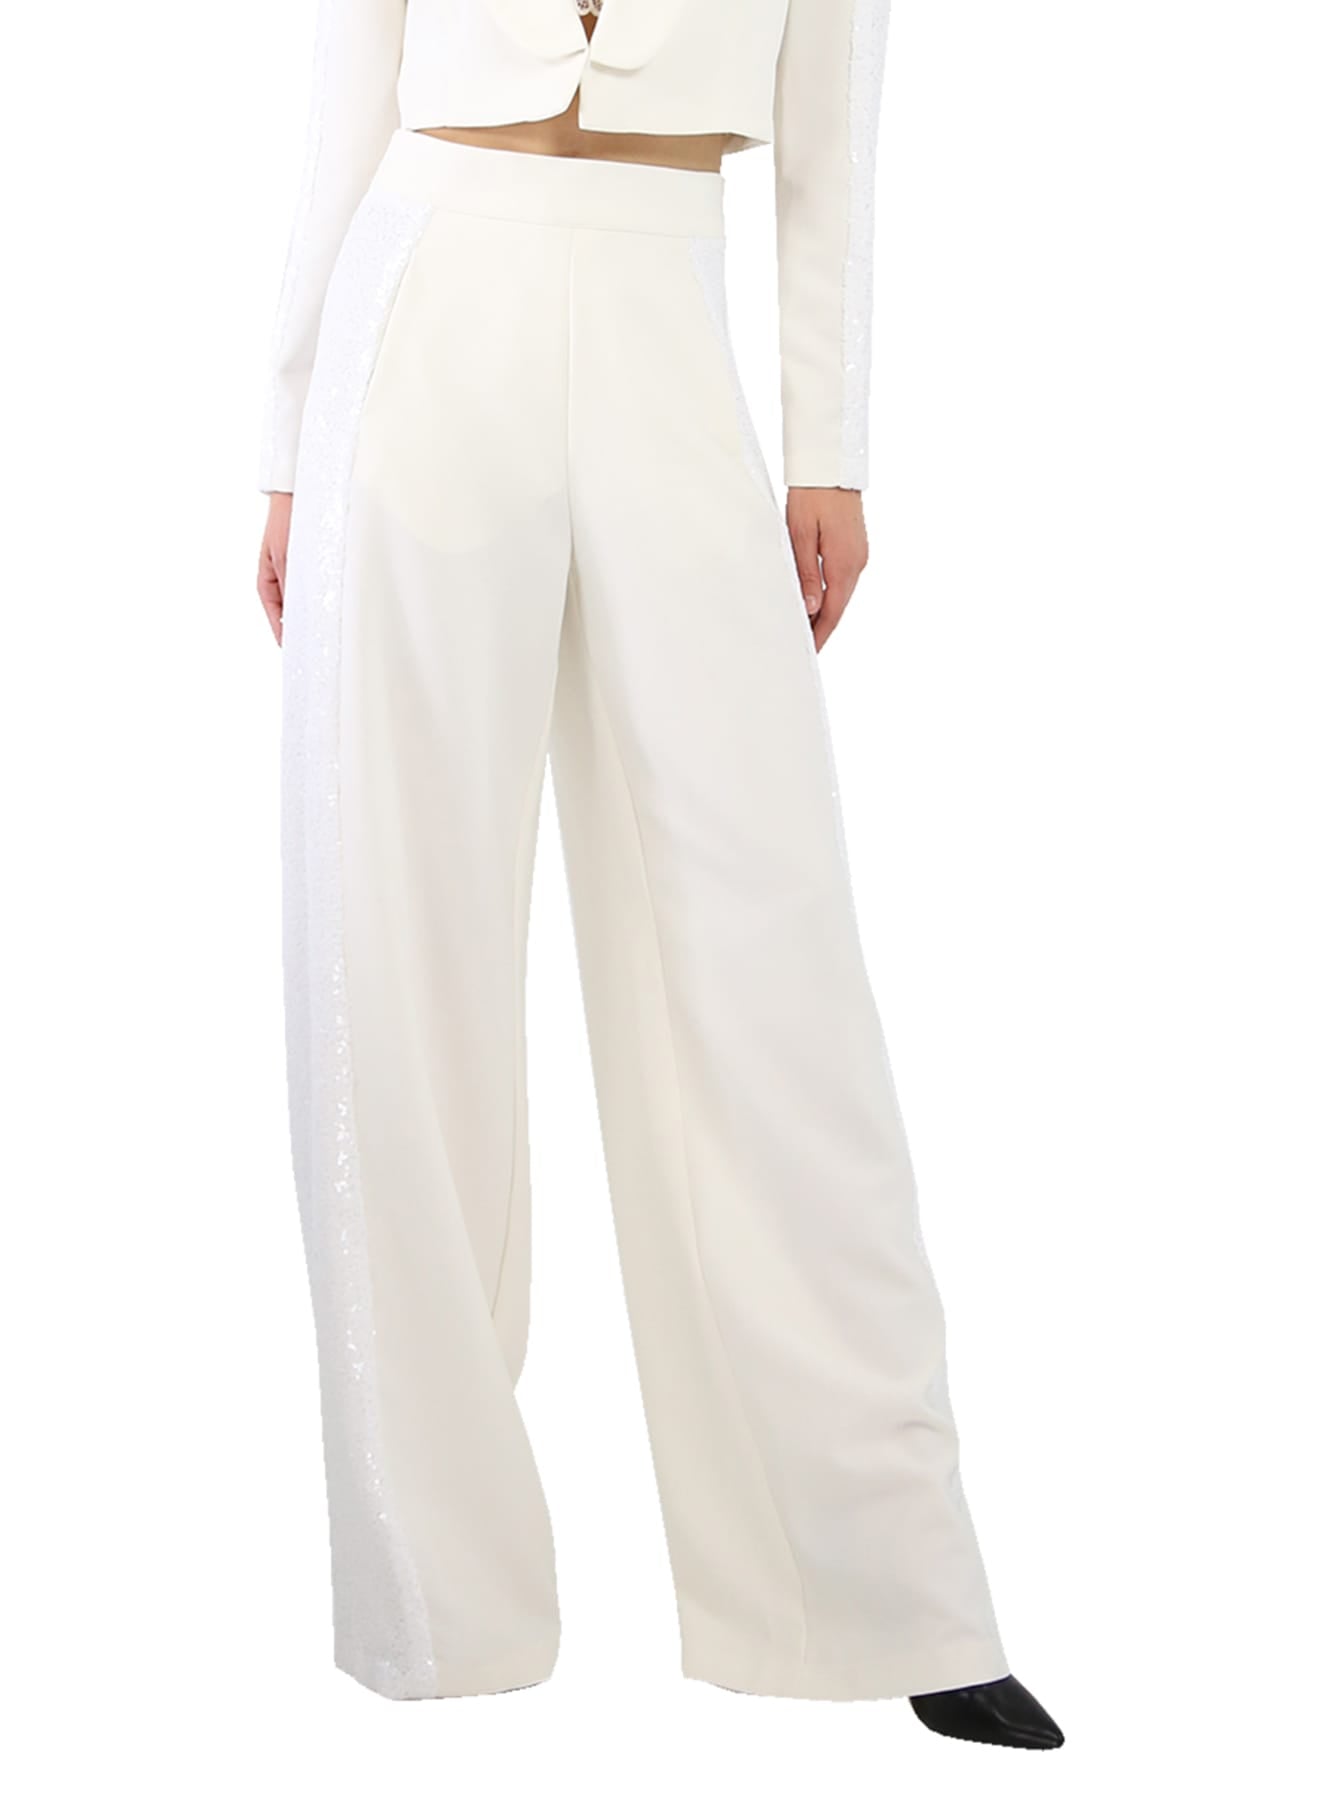 "white sequin pant set" "Kyle X Shahida" "sequin plus pants" "sequin dress pants" "tall sequin pants"